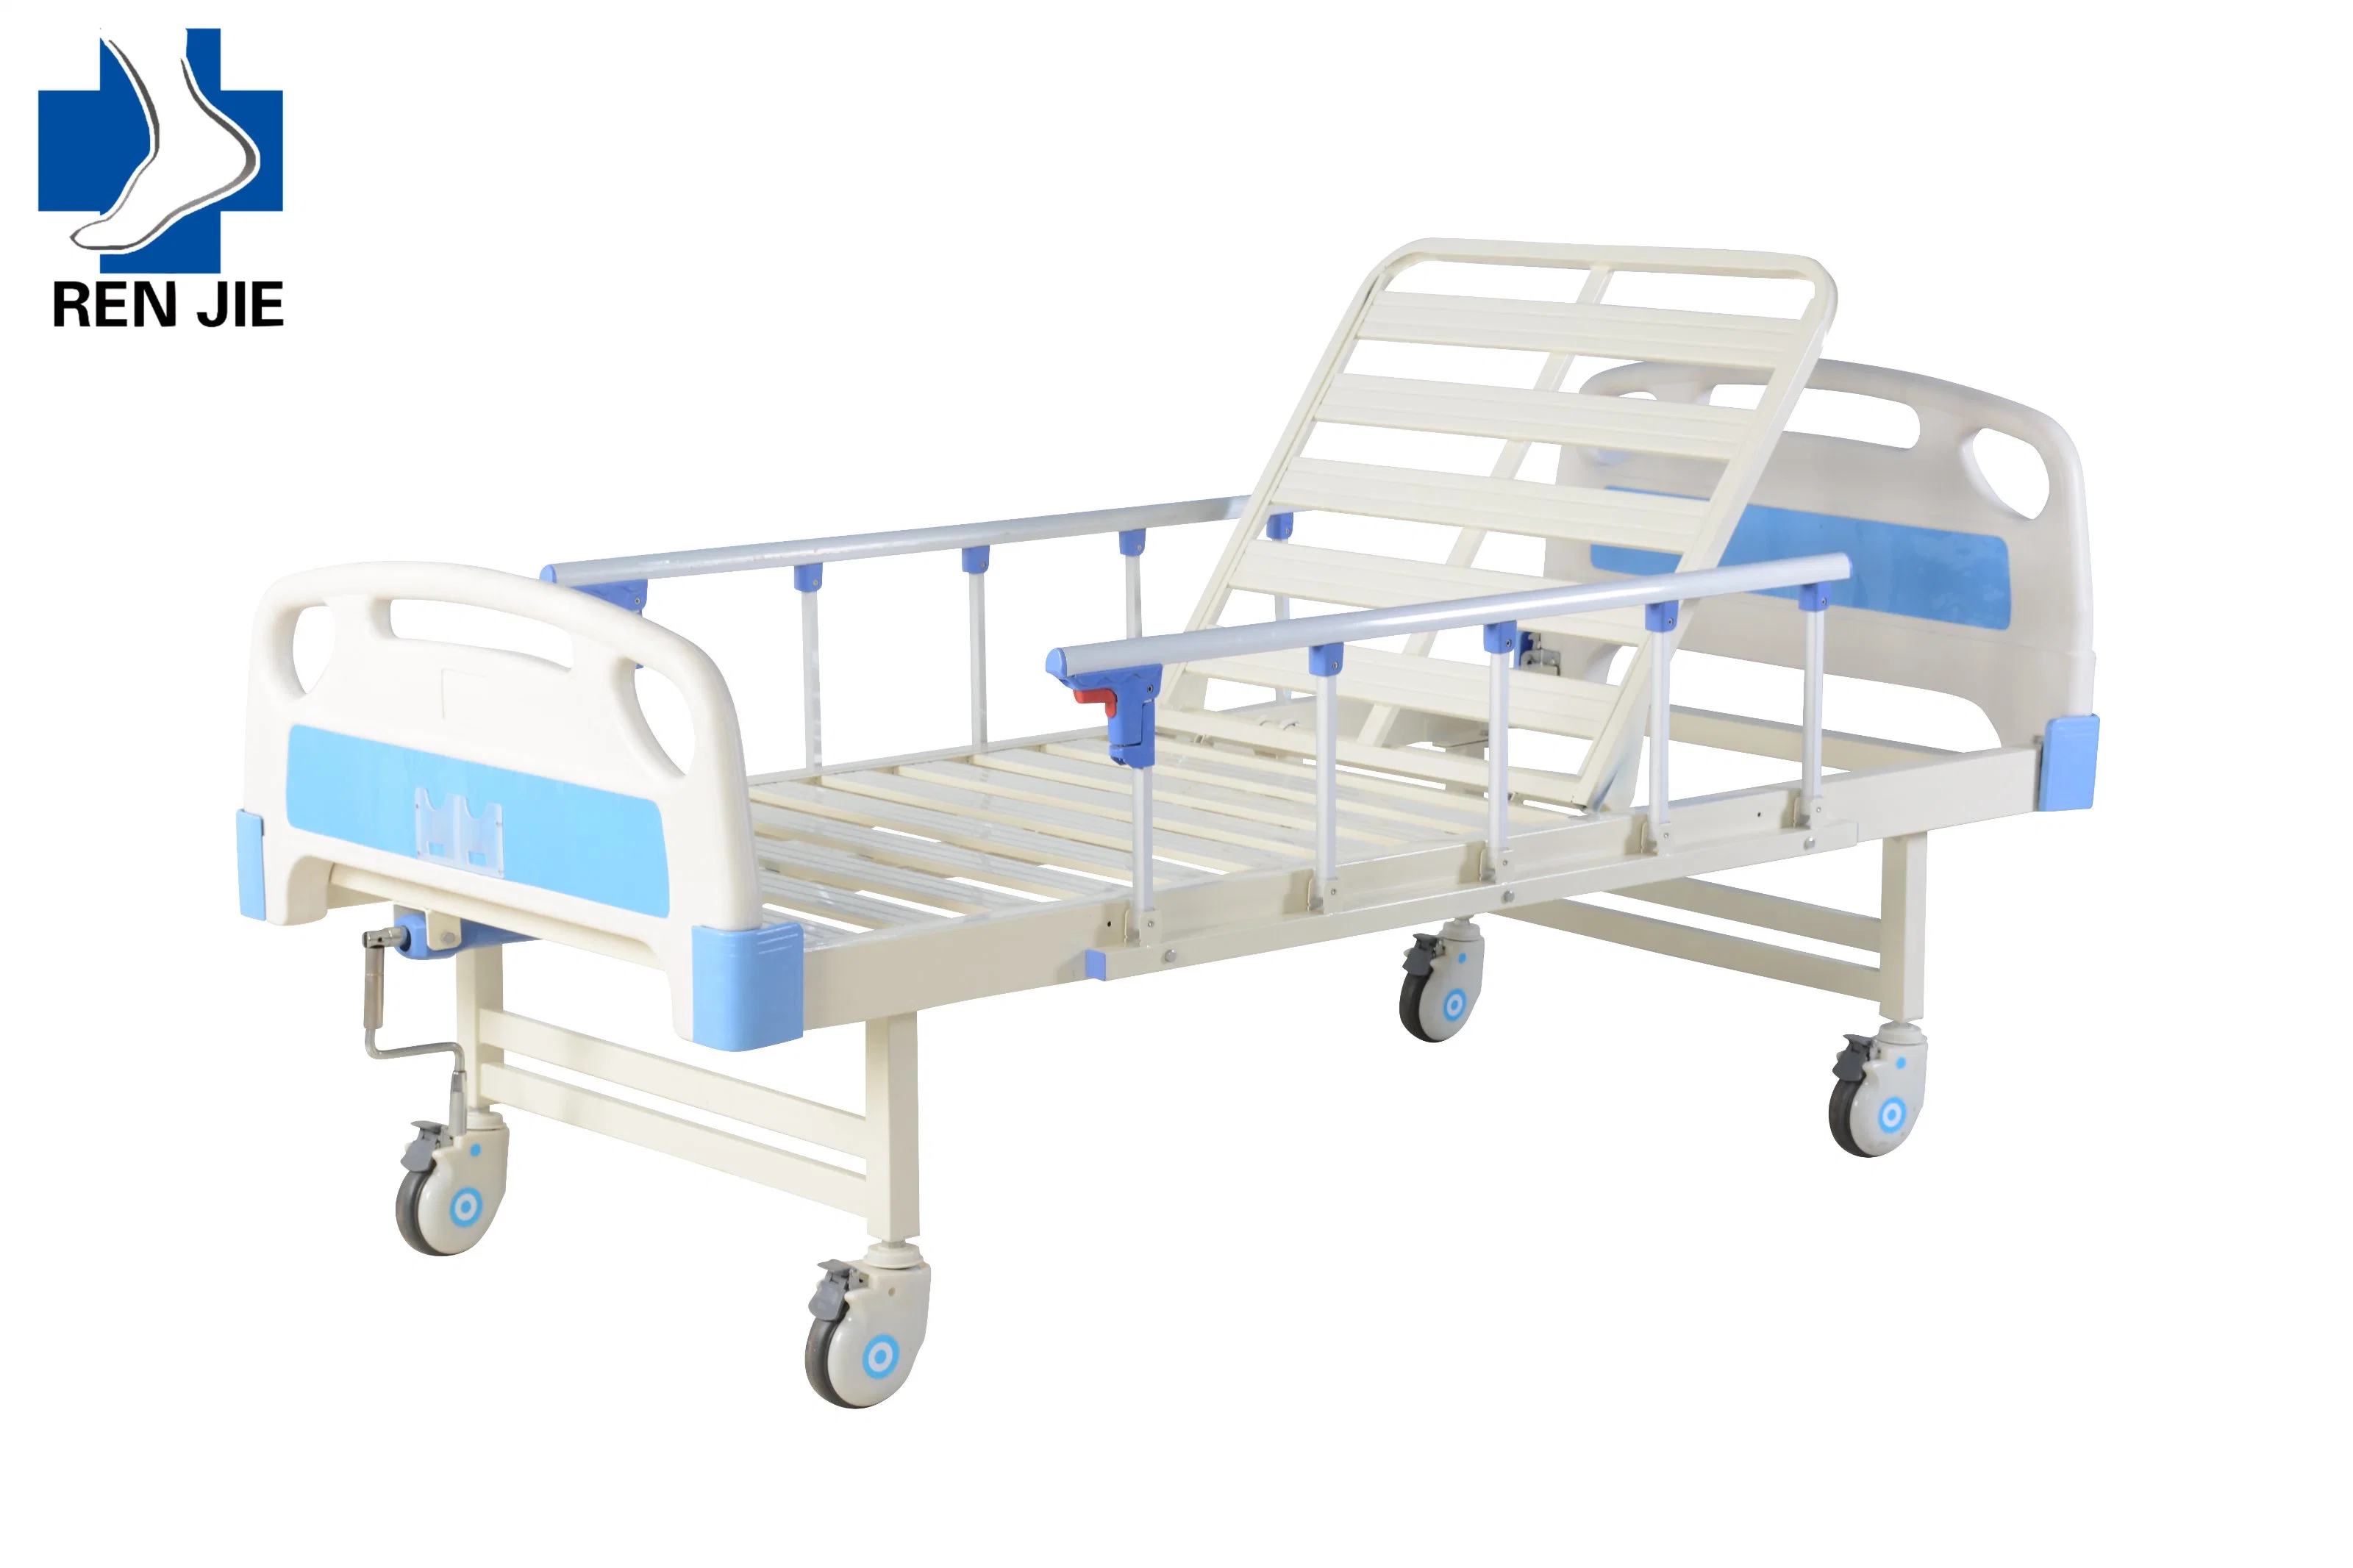 Fabricante de muebles Hospital ajustable multifunción Manual Manivela cama de hospital utiliza el equipo Medicai